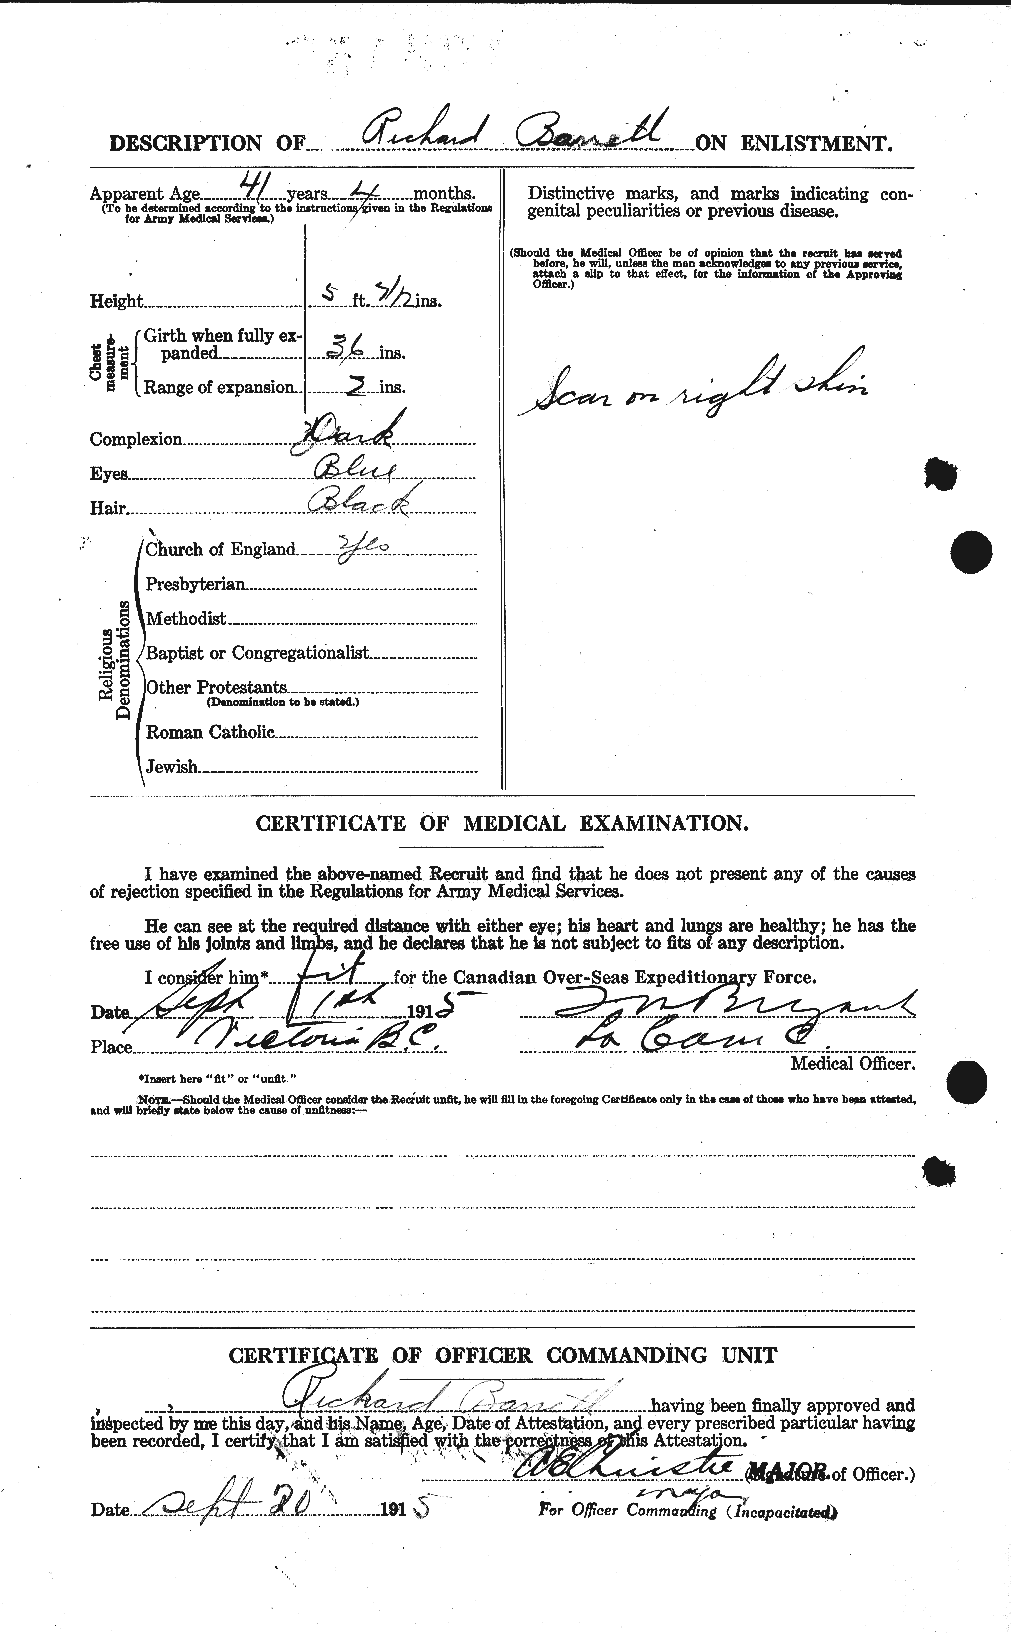 Dossiers du Personnel de la Première Guerre mondiale - CEC 220196b